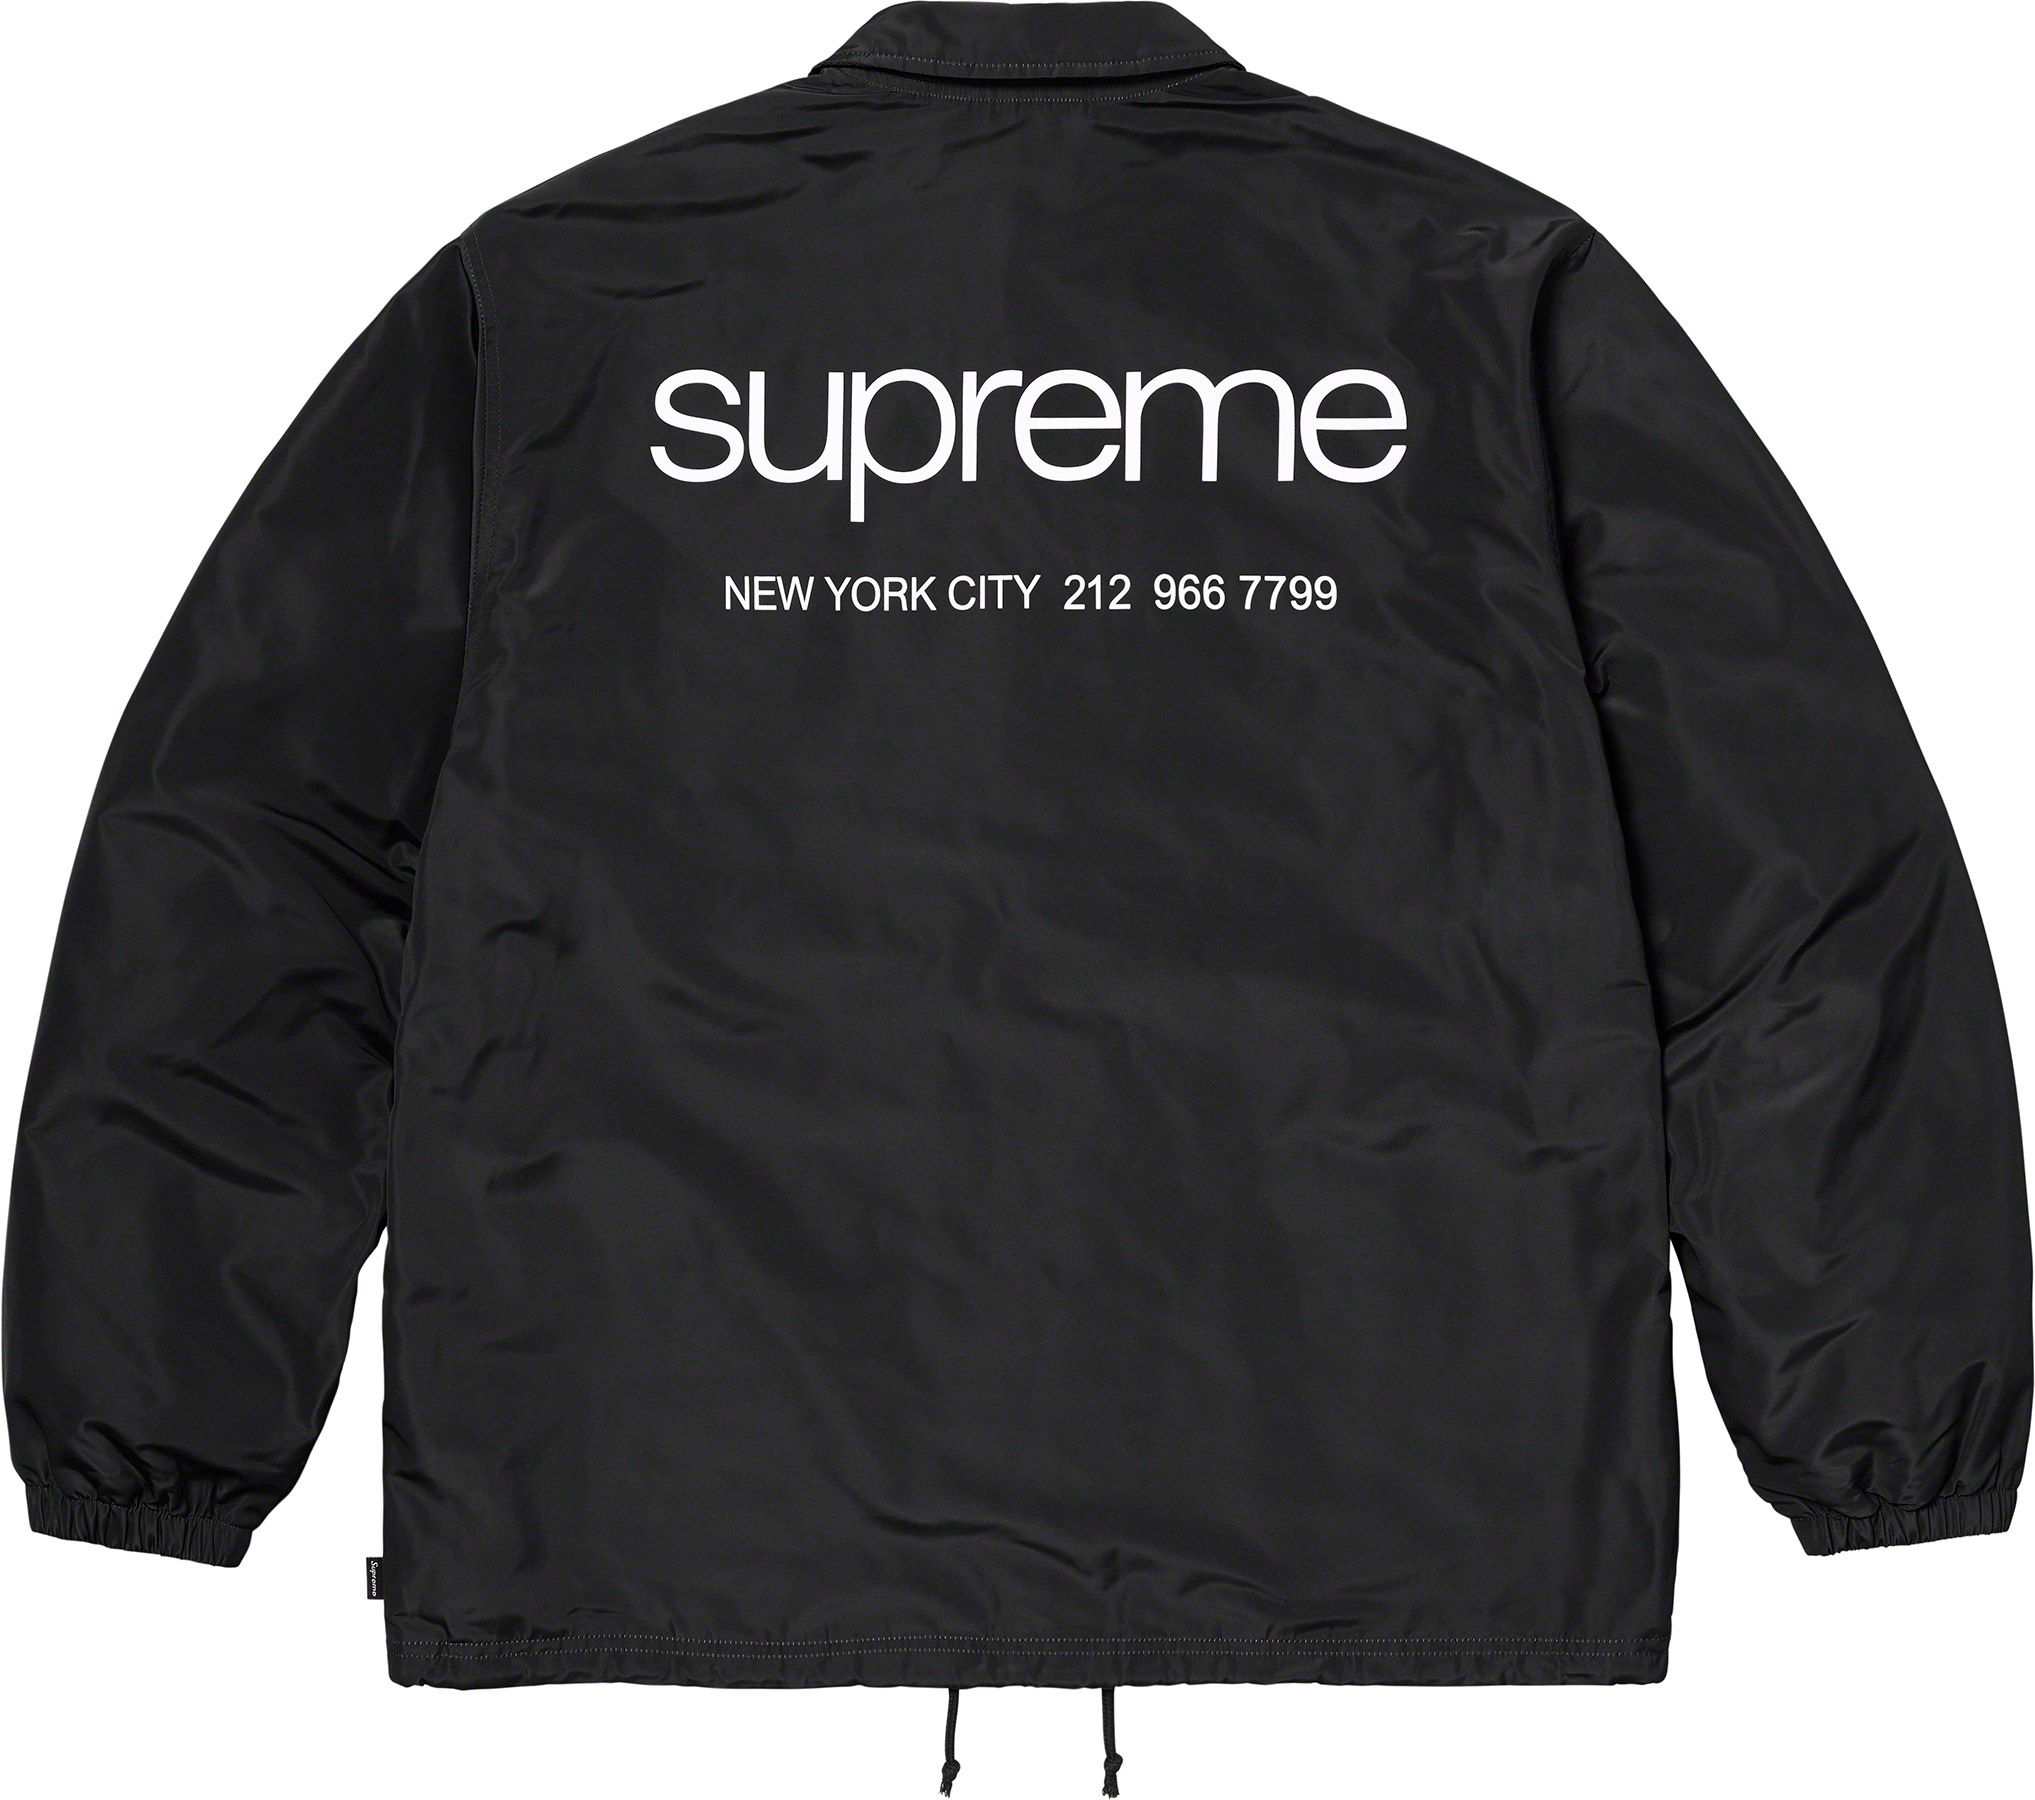 supreme NYC Coaches Jacket large Black